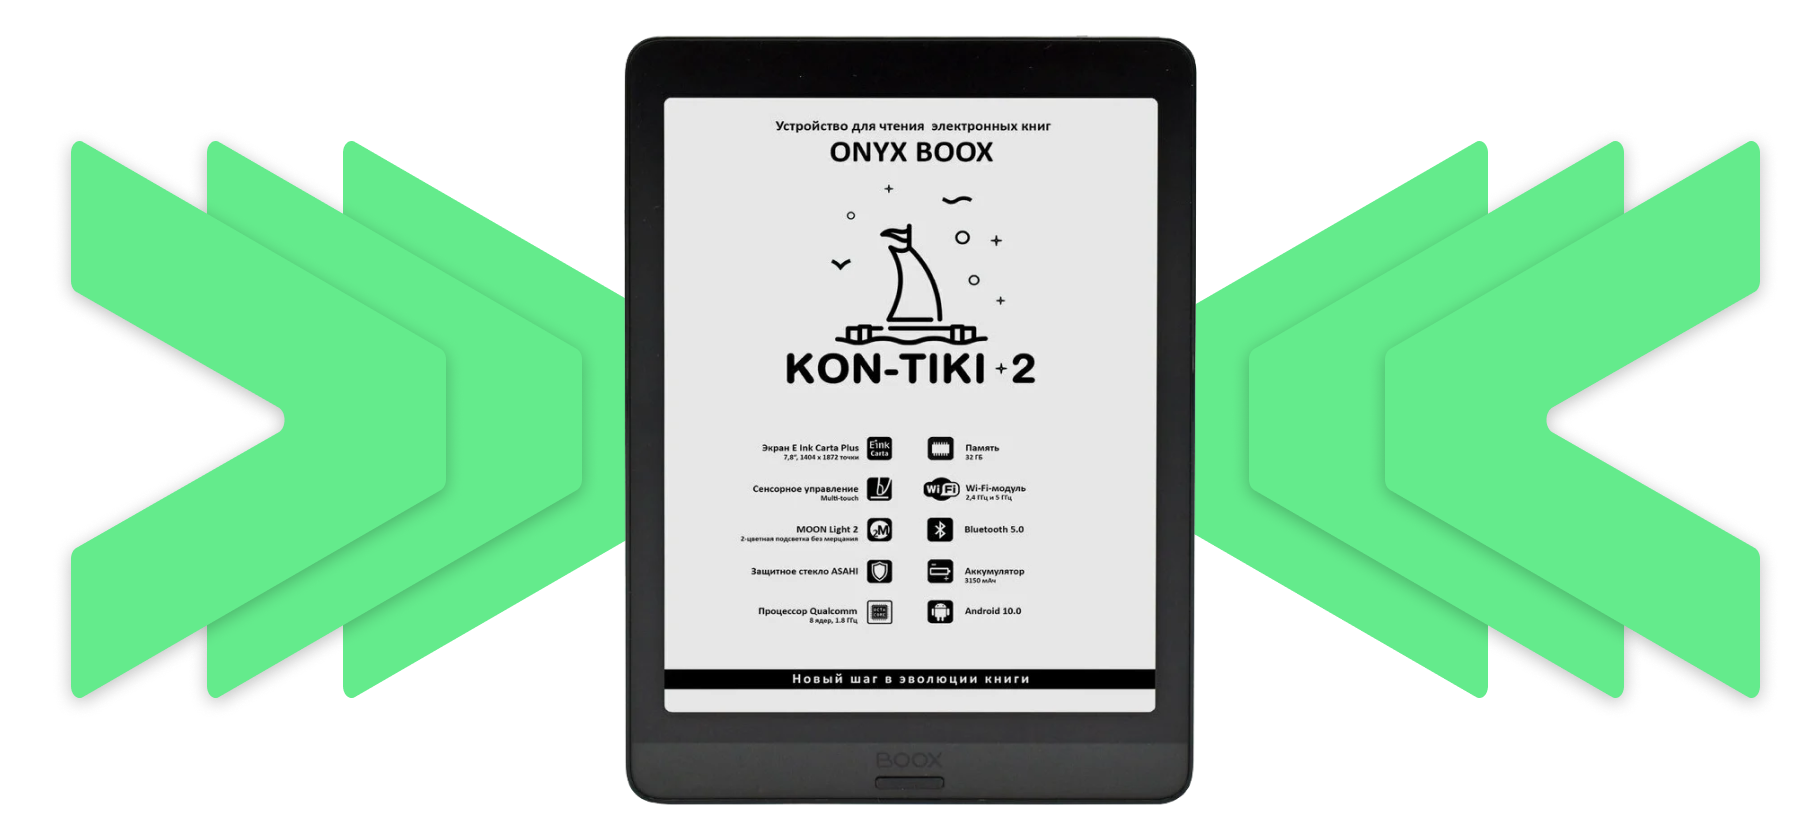 Onyx Boox Kon-Tiki 2: характеристики, обзоры, частые вопросы о модели